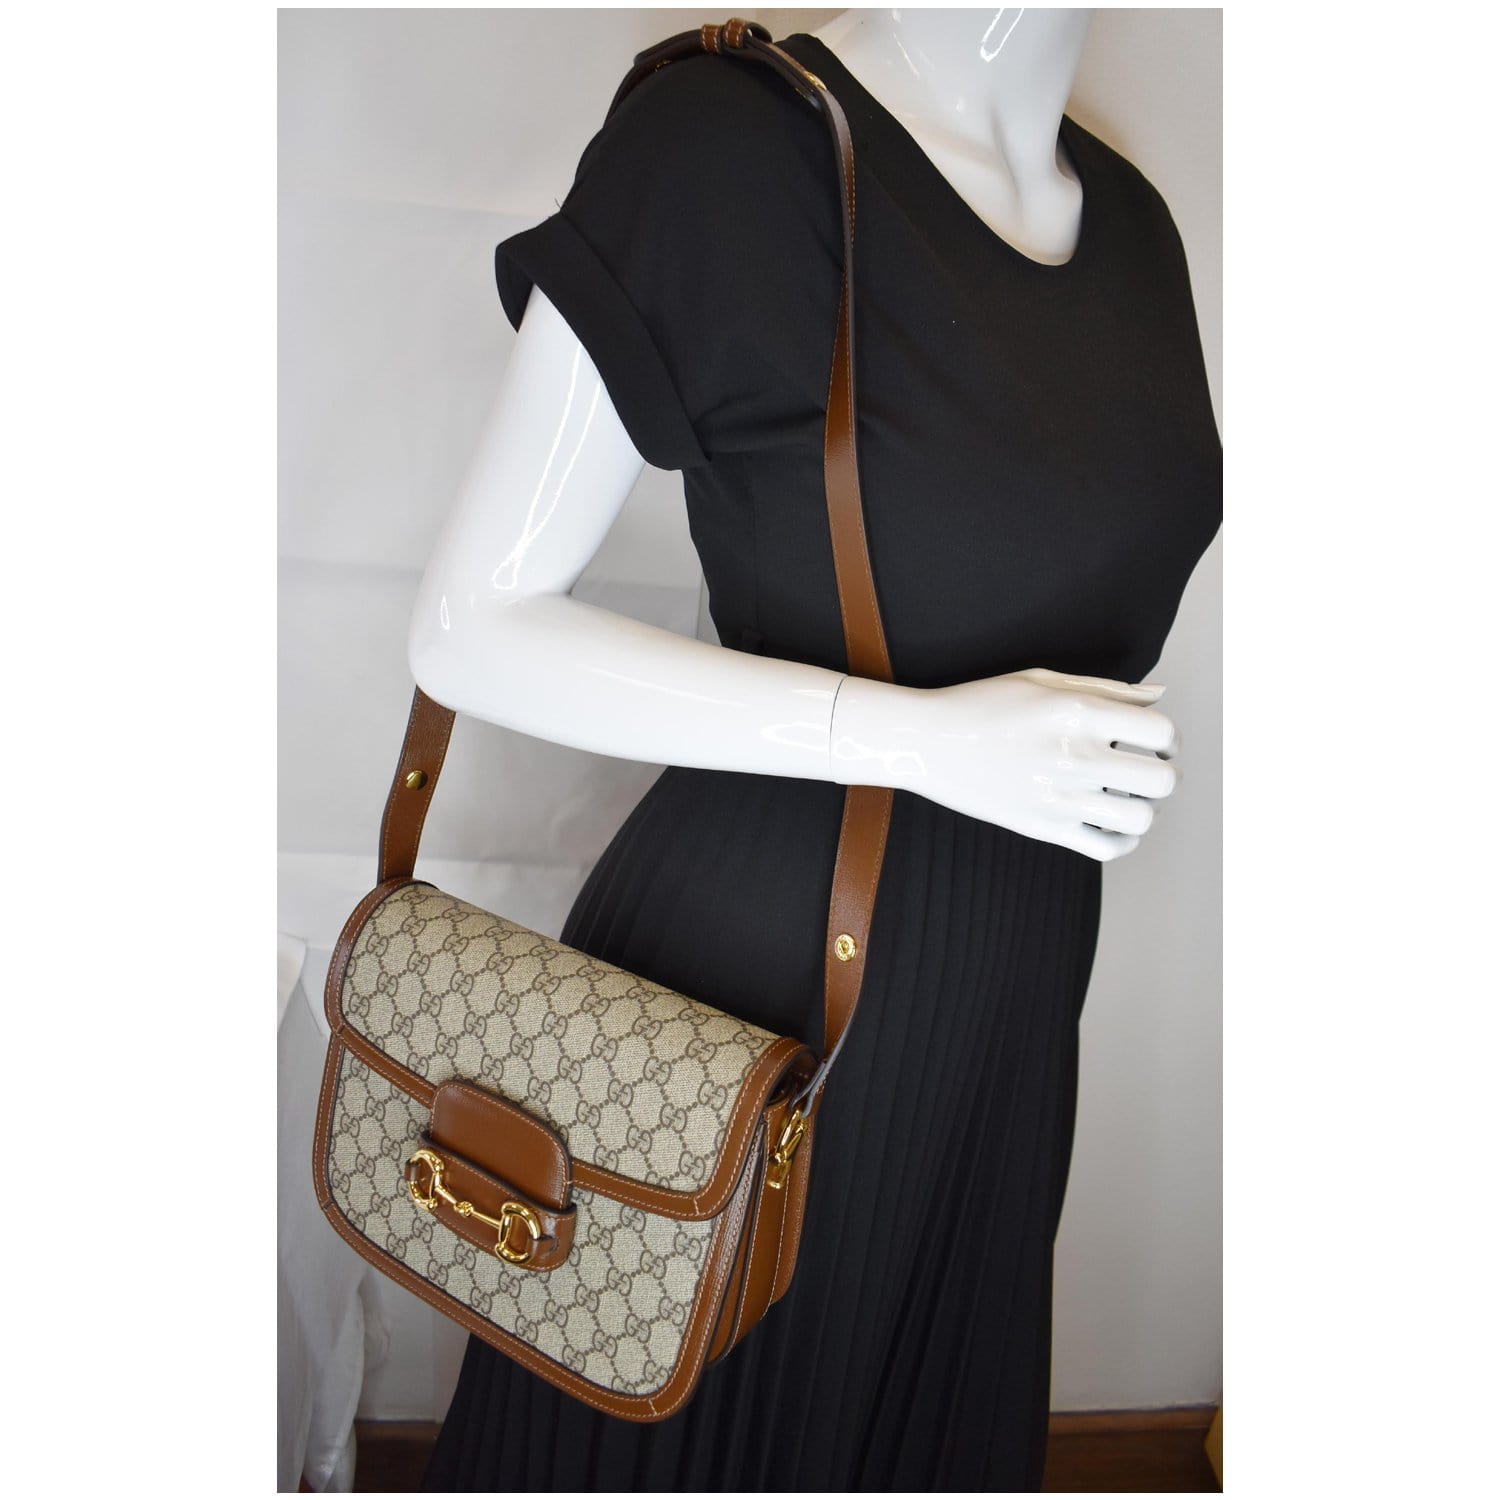 Gucci Horsebit 1955 Canvas Shoulder Bag in Beige - Gucci